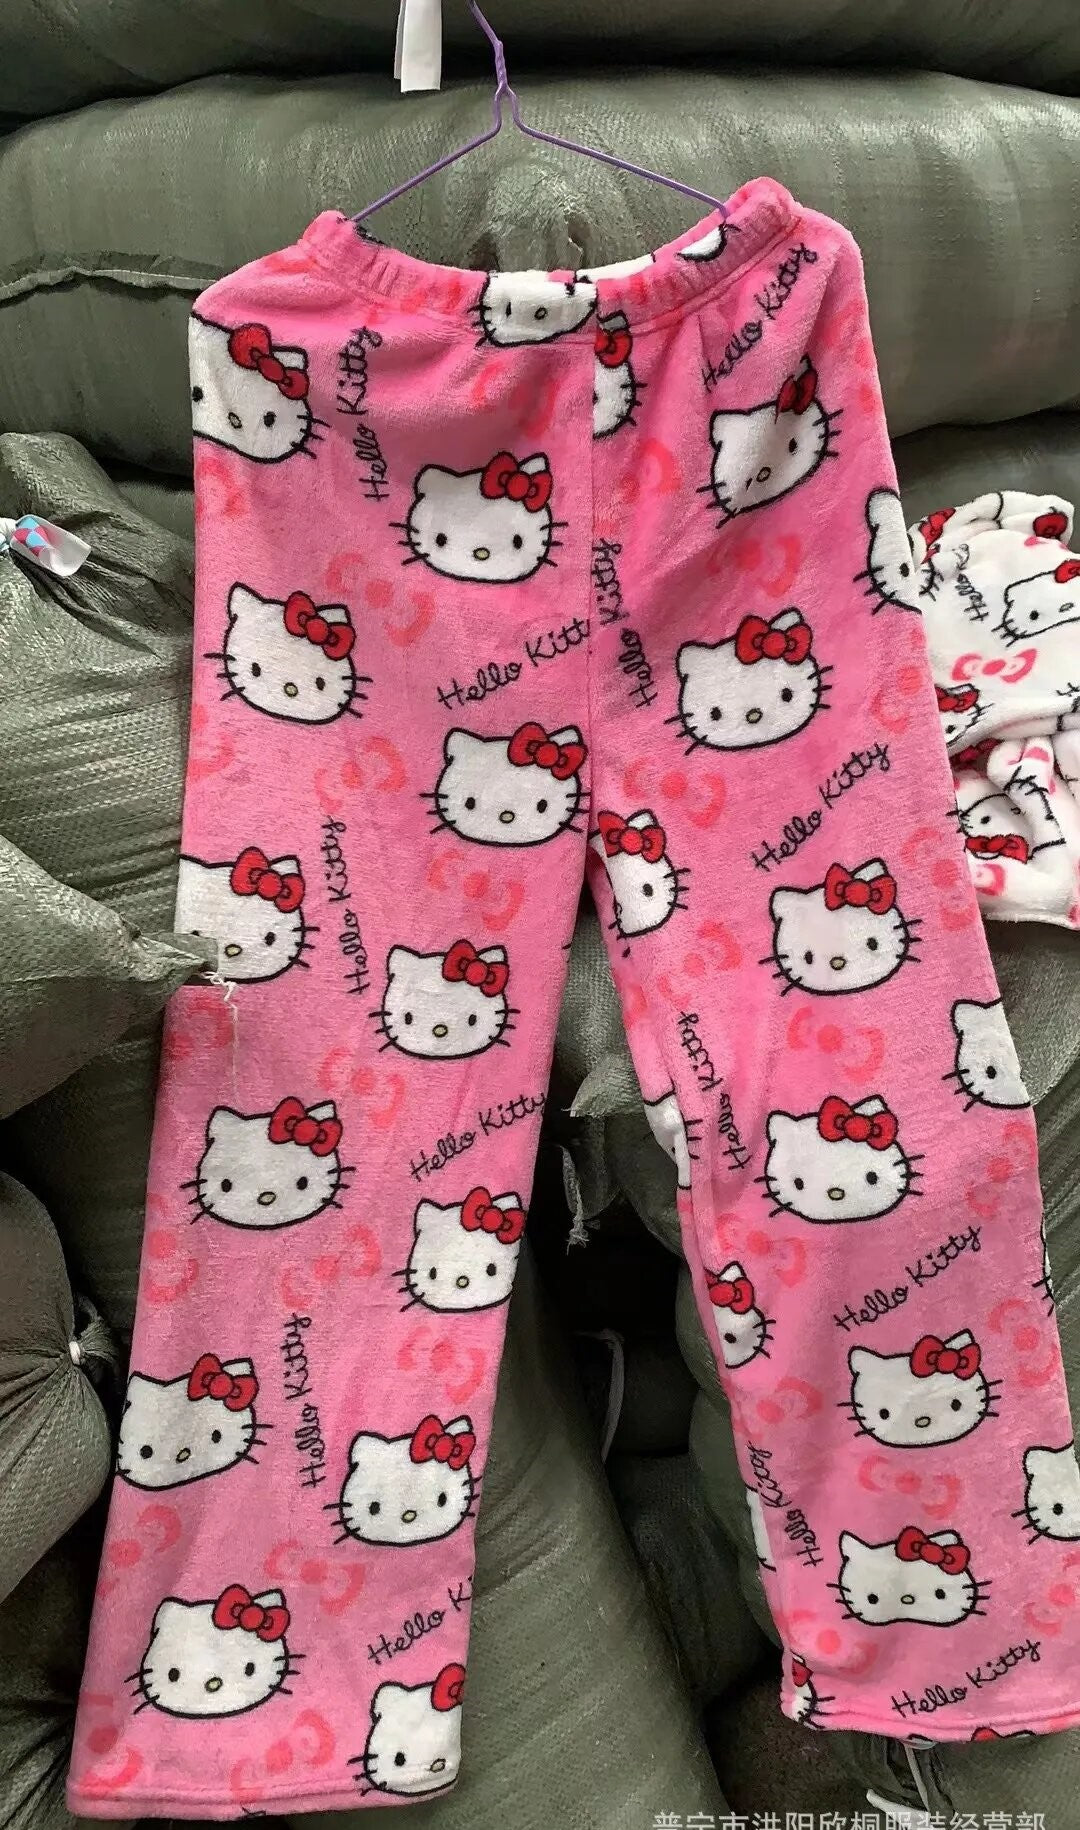 Buy Hello Kitty Cuddly Cute Buffalo Check Plaid Pajama Pant, Black and Pink  Print, Medium at Amazon.in